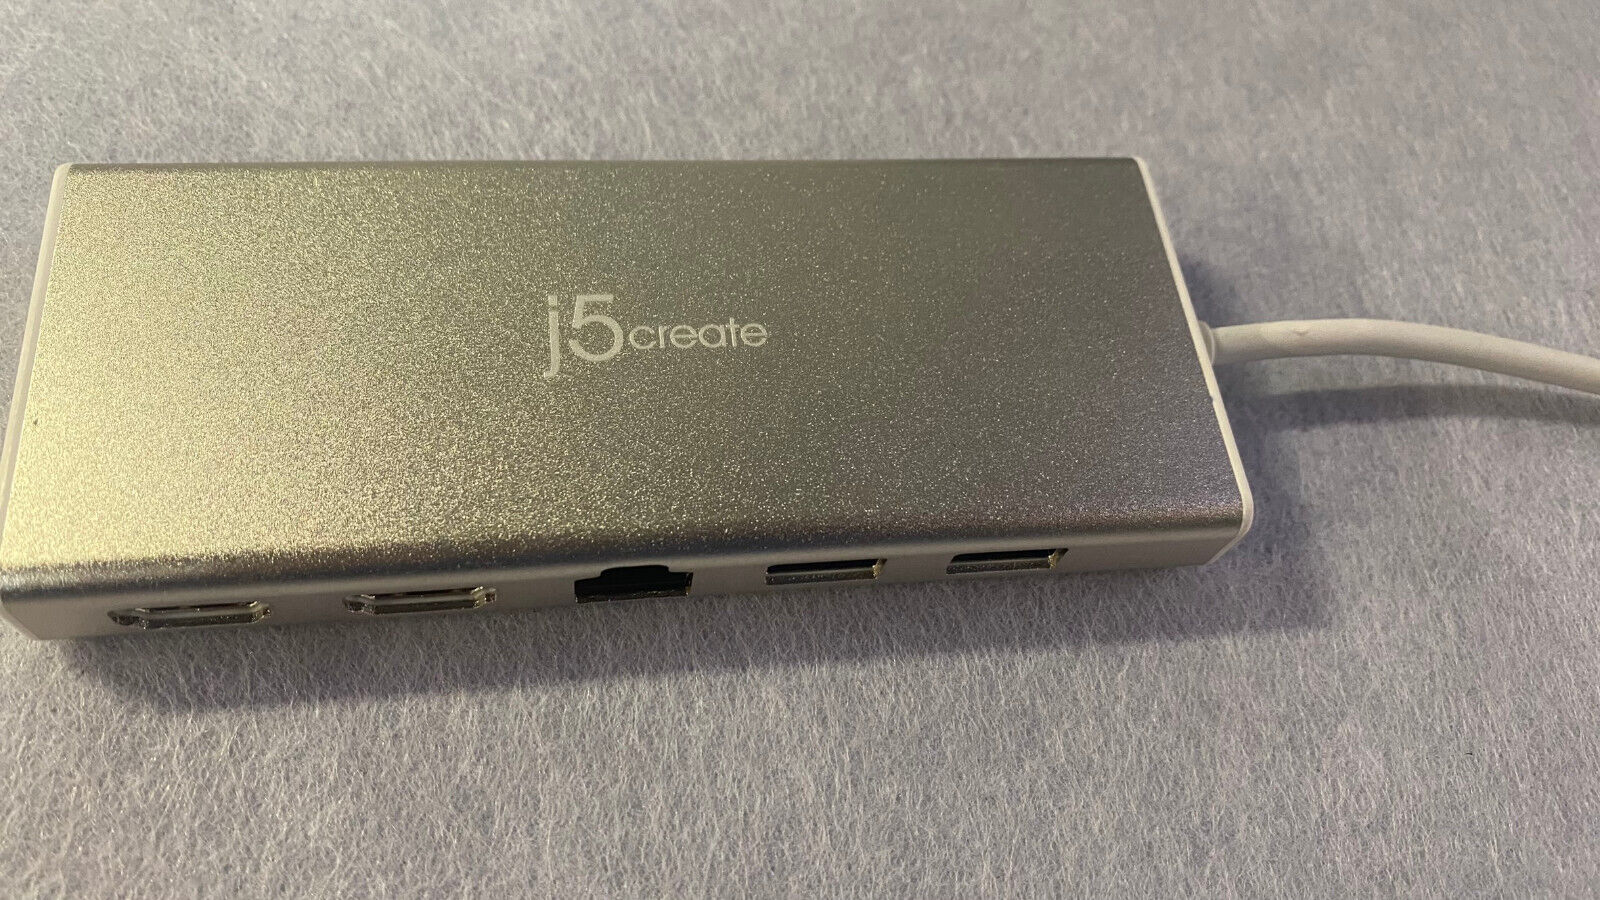 J5 Create: USB C Mini Dock (Mint)